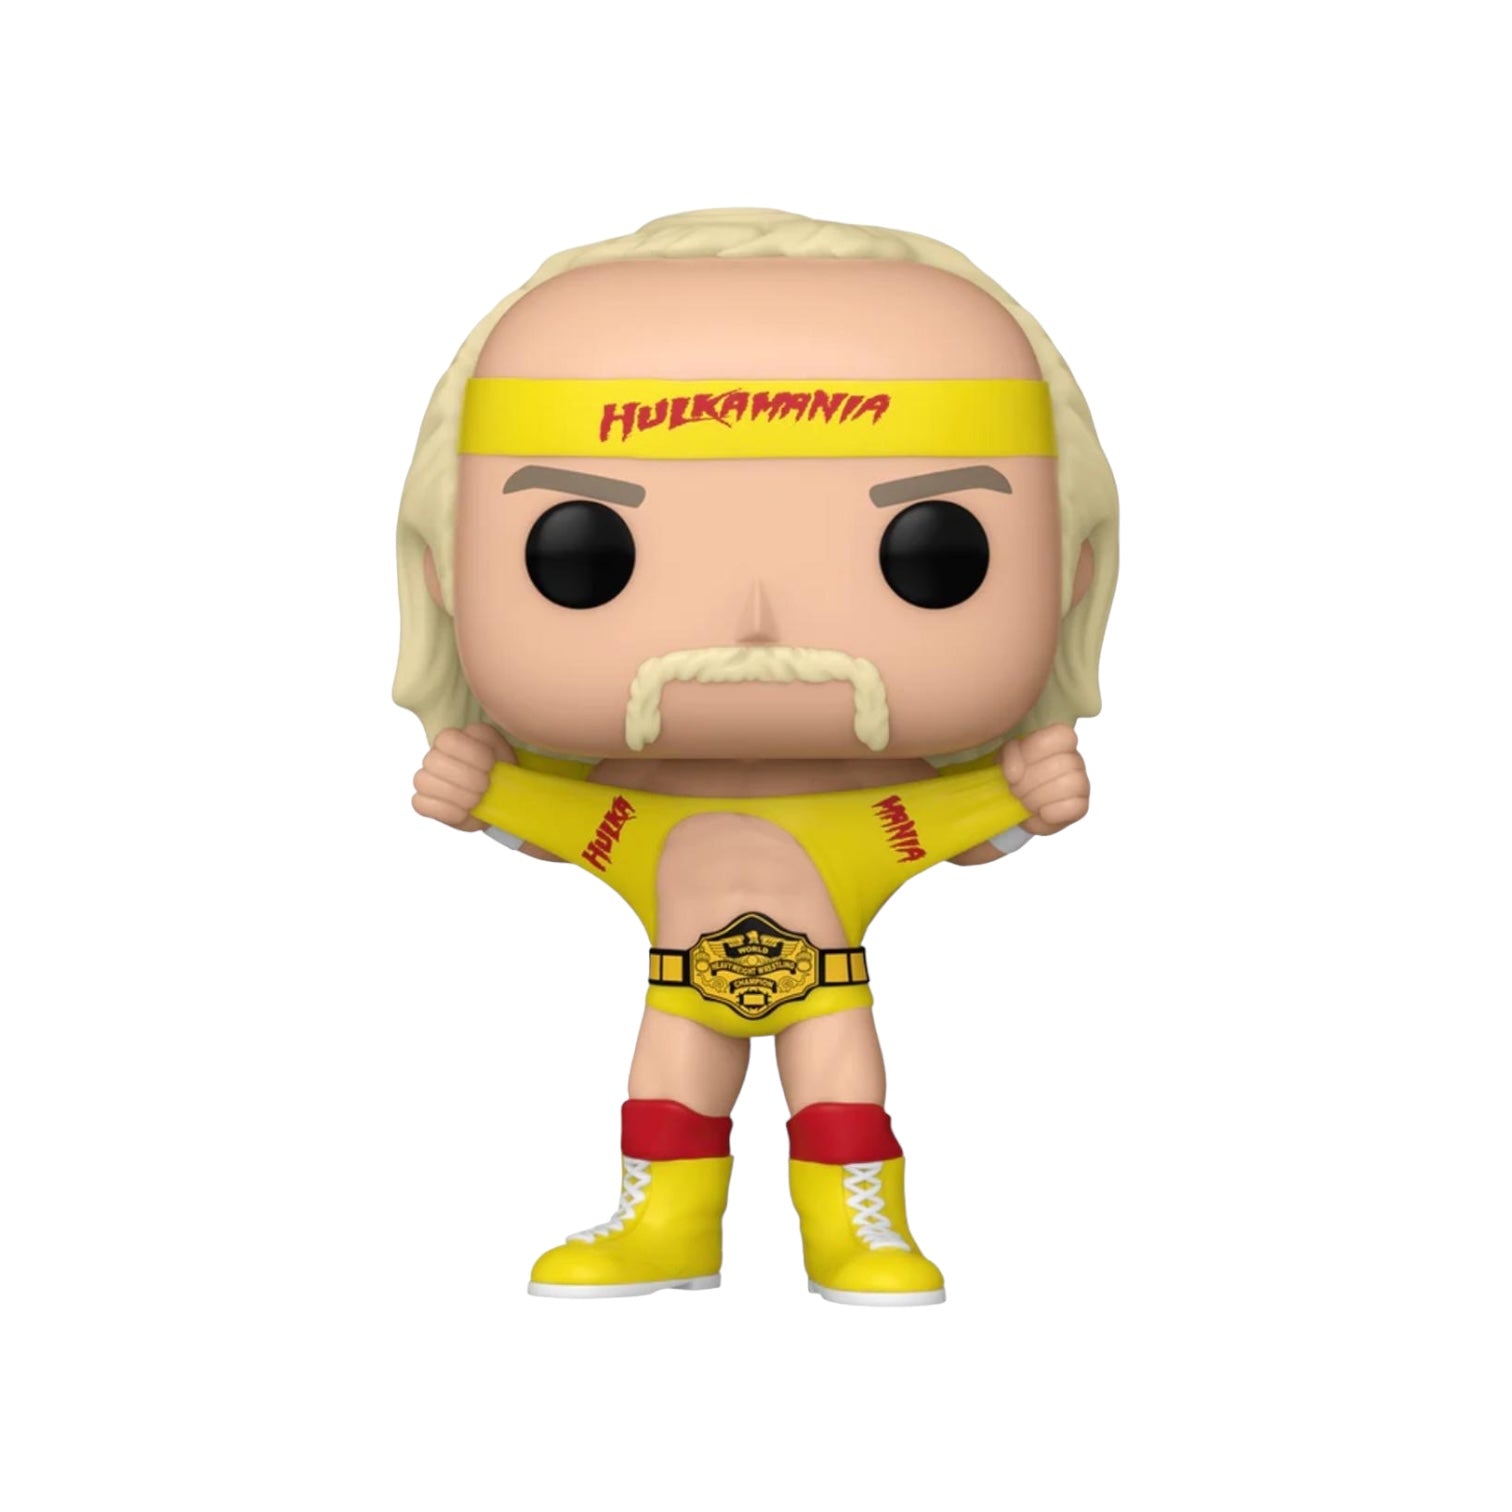 Hulk Hogan #149 Funko Pop! - WWE